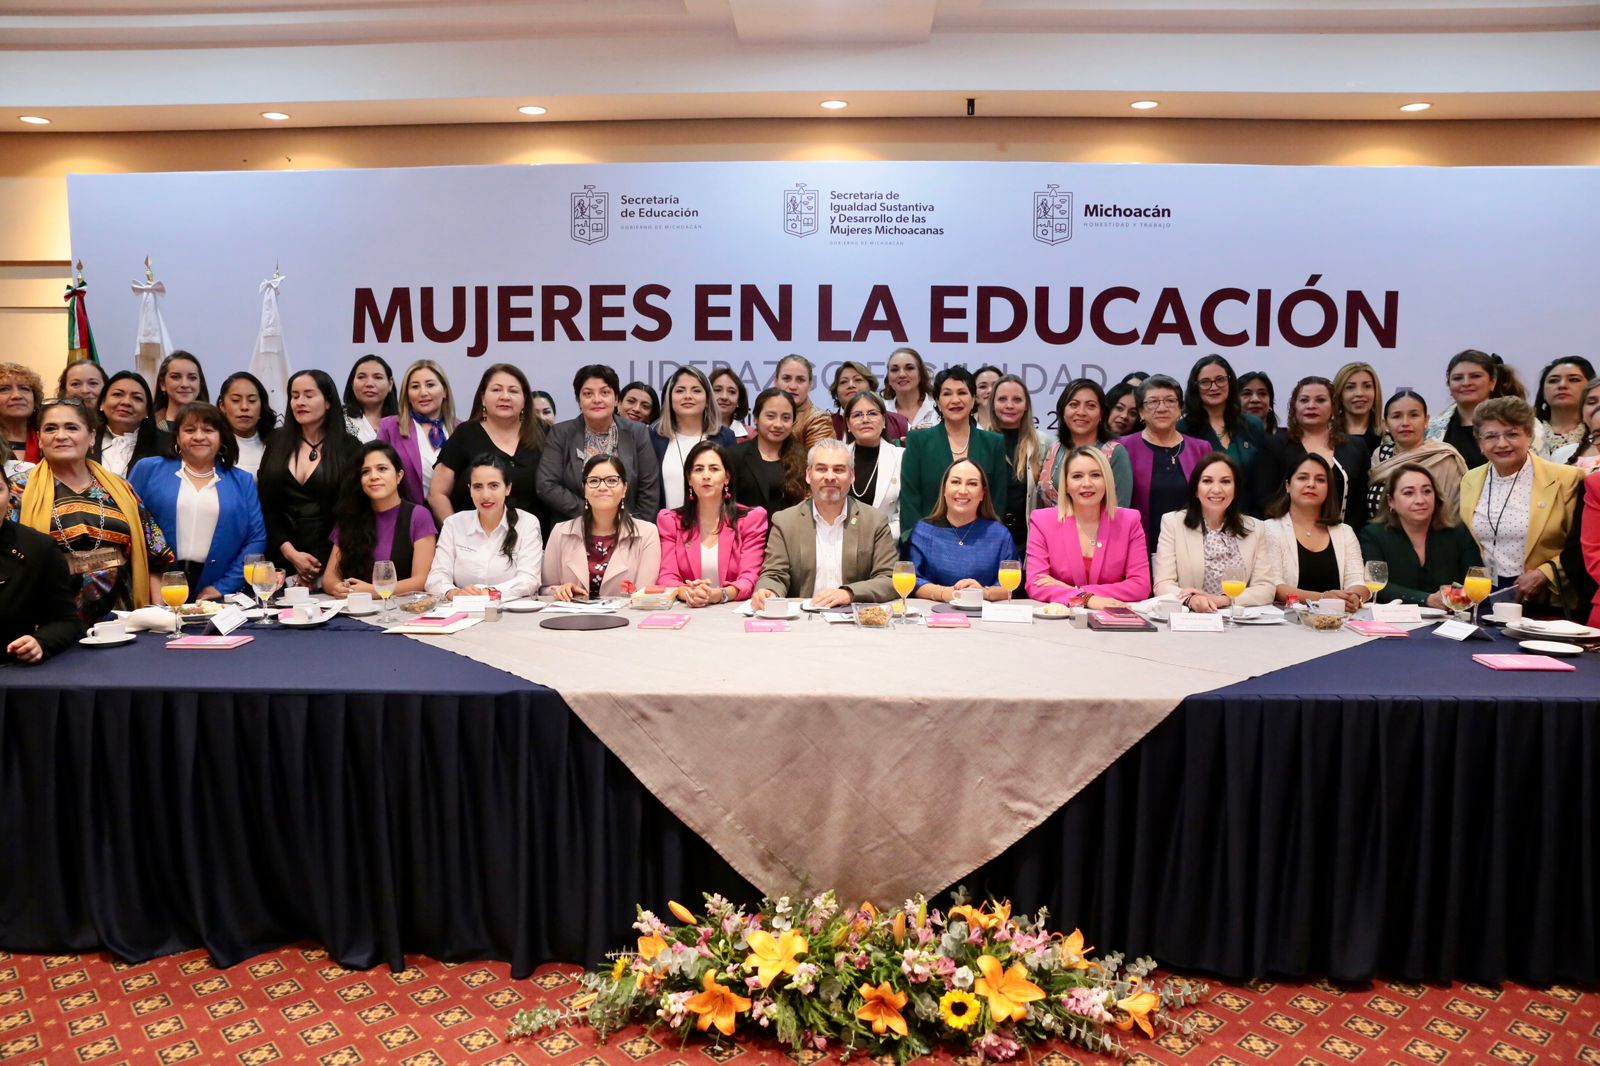 «La mayoría de la educación en Michoacán esta por primera vez en manos de mujeres»: Ramírez Bedolla